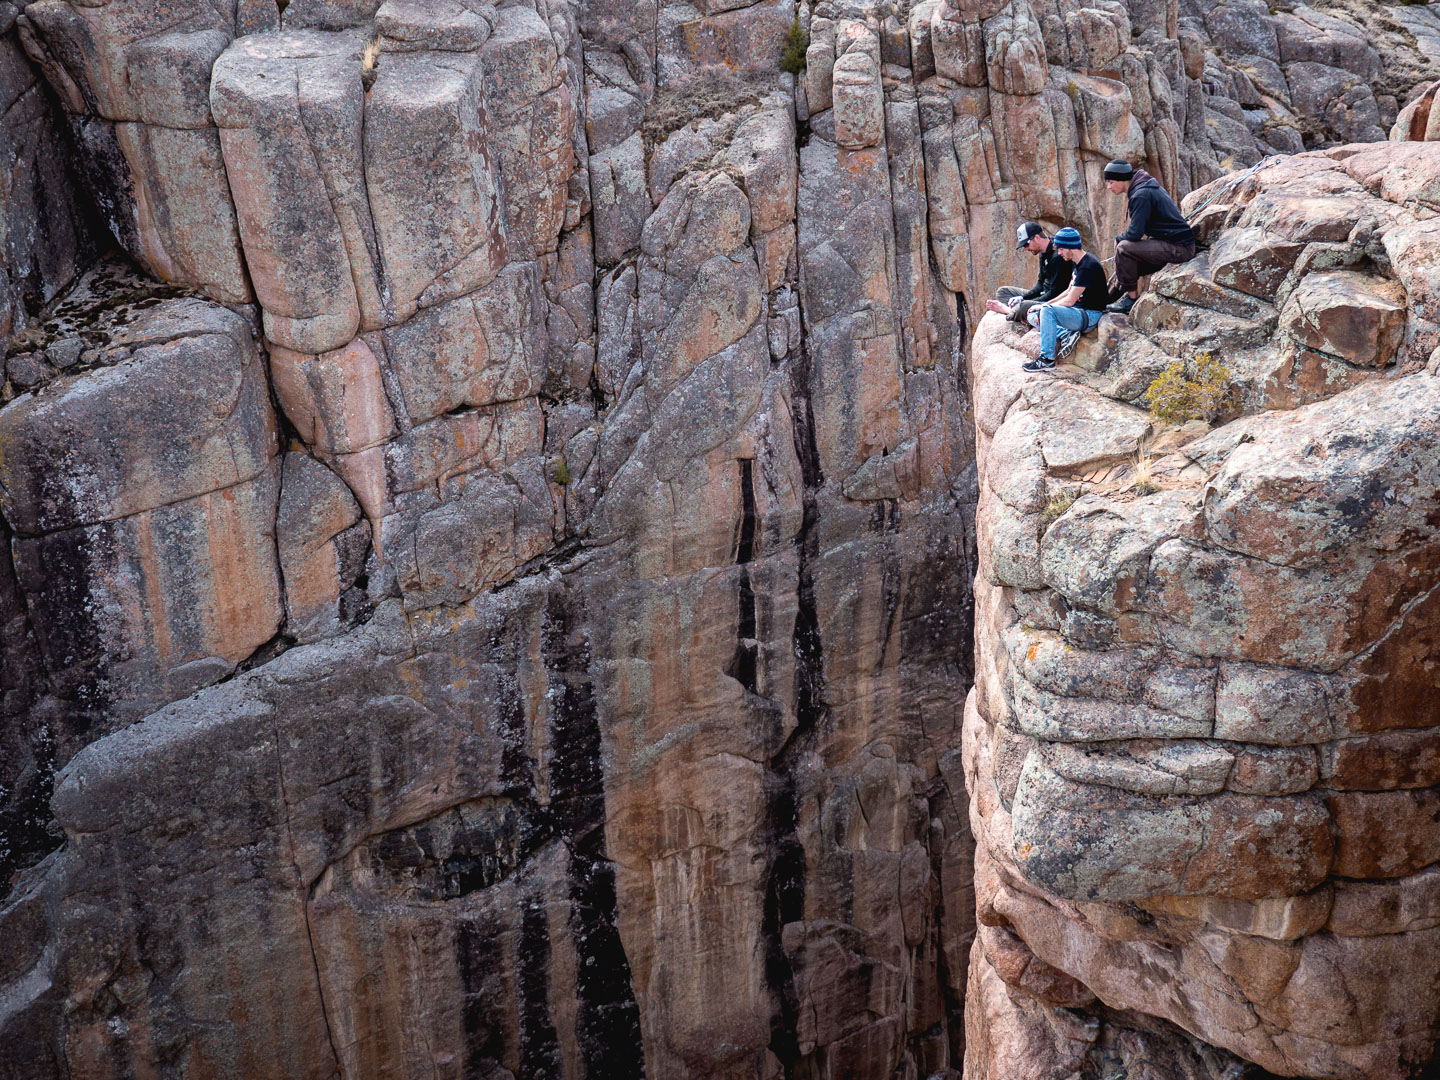 Boys on a cliff